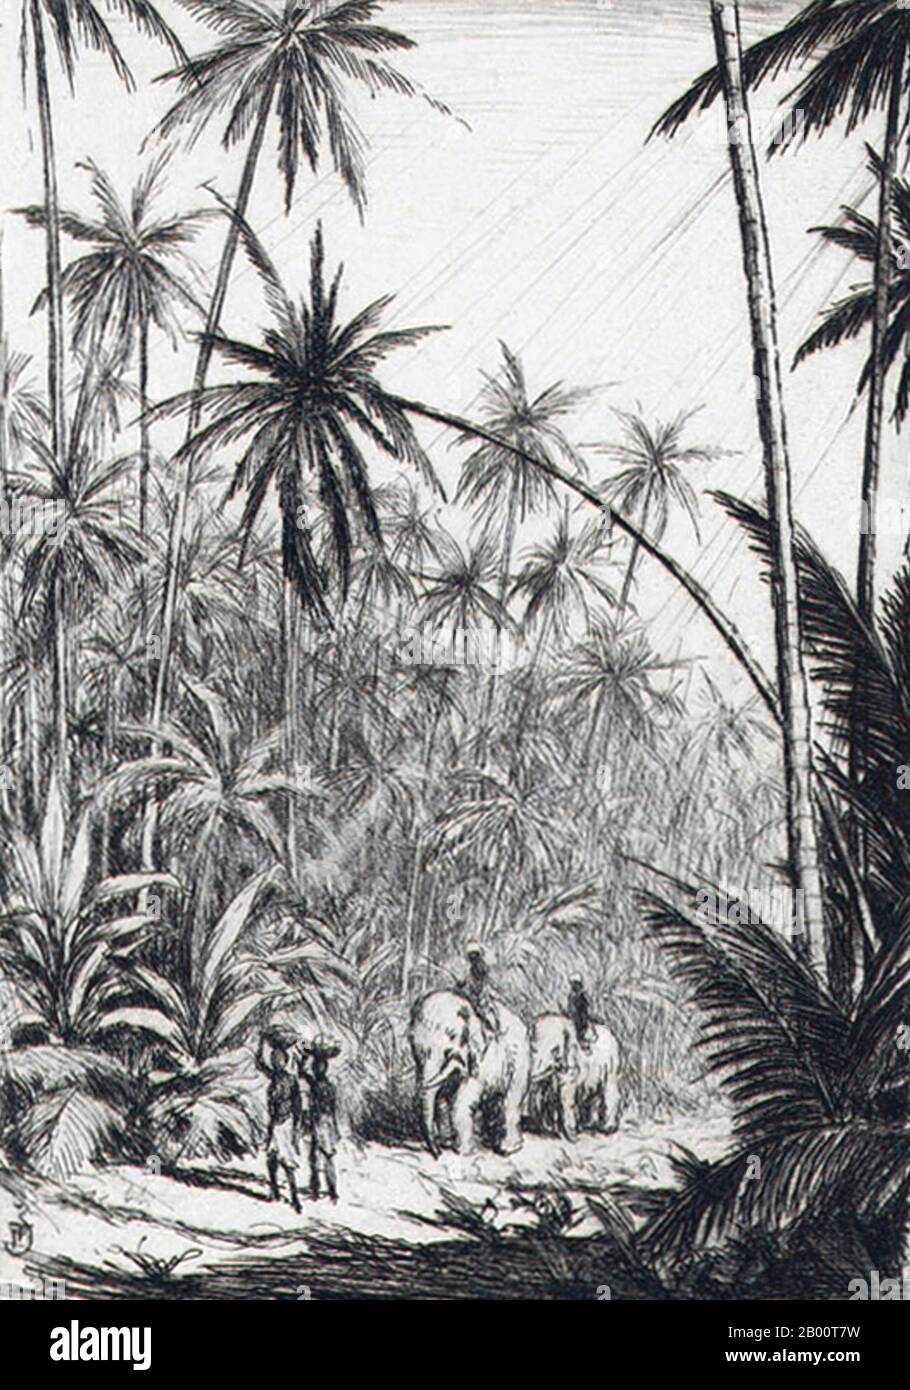 Sri Lanka/Tchécoslovaquie: 'Les éléphants passent par les plantations de noix de coco dans la pluie'. Dessin de T. F. Simon (1877-1942), c. 1928. Tavik Frantisek Simon (1877-1942) est un peintre tchèque, un graveur et un artiste de la coupe du bois. Bien que basé principalement en Europe, ses voyages importants l'ont conduit au Maroc, Ceylan (aujourd'hui Sri Lanka), en Inde, et au Japon, des images de tous ceux qui apparaissent dans son travail artistique. Il meurt à Prague en 1942. Largement ignoré pendant l'ère communiste en Tchécoslovaquie, son travail a reçu une plus grande attention ces dernières années. Banque D'Images